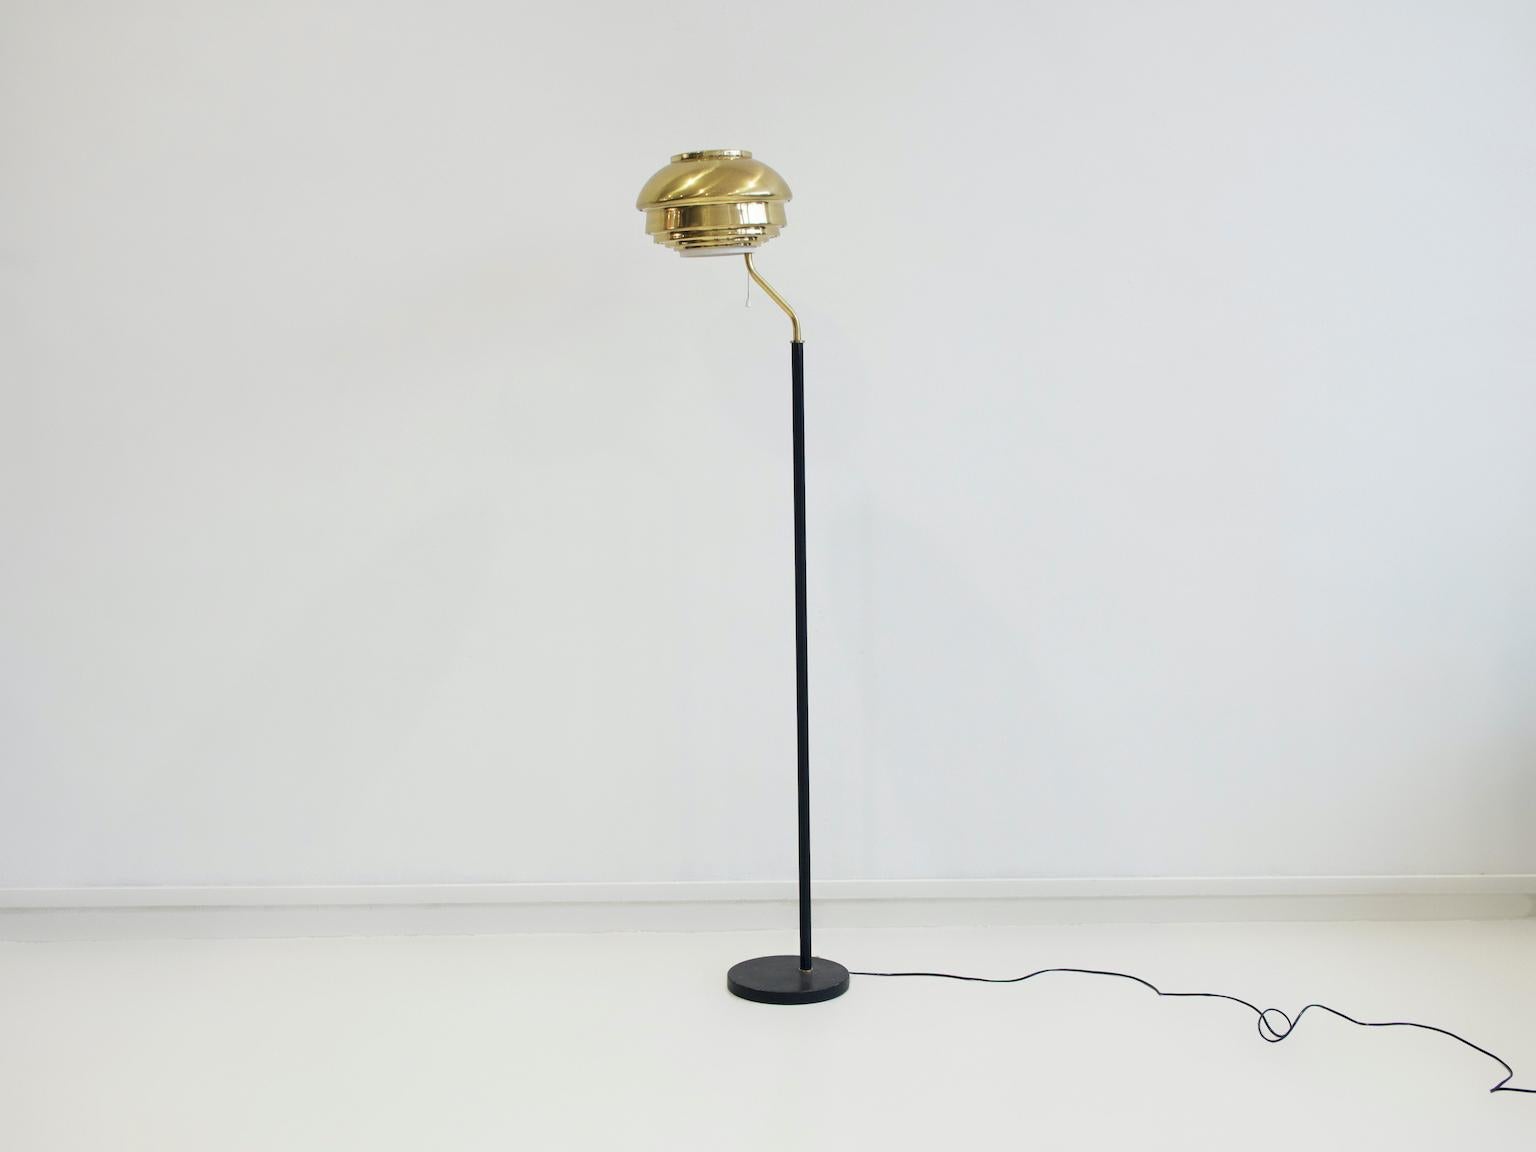 La lampe A808 a été conçue par Alvar Aalto en 1955 pour l'Institut national des pensions d'Helsinki. Ce lampadaire a été fabriqué par Valaisinpaja Oy, Finlande, vers les années 1970. L'abat-jour est composé de bandes de laiton superposées et de